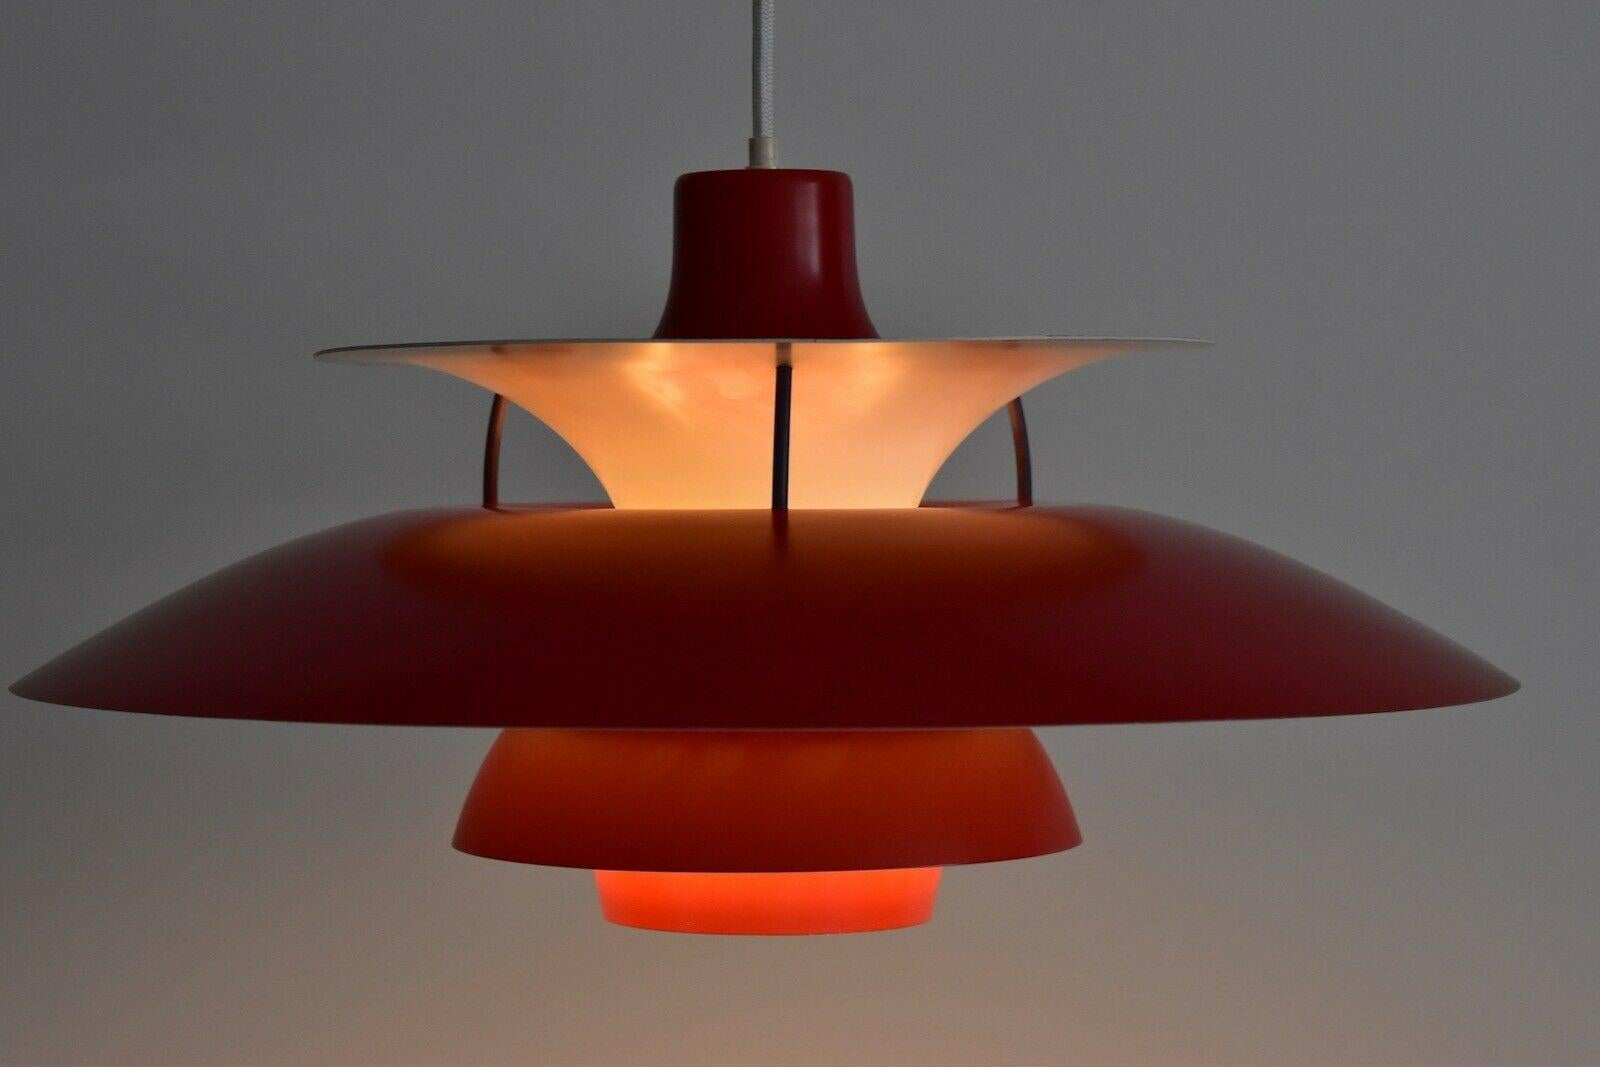 Red Poul Henningsen PH 5 Pendant Lamp by Louis Poulsen, Denmark 1